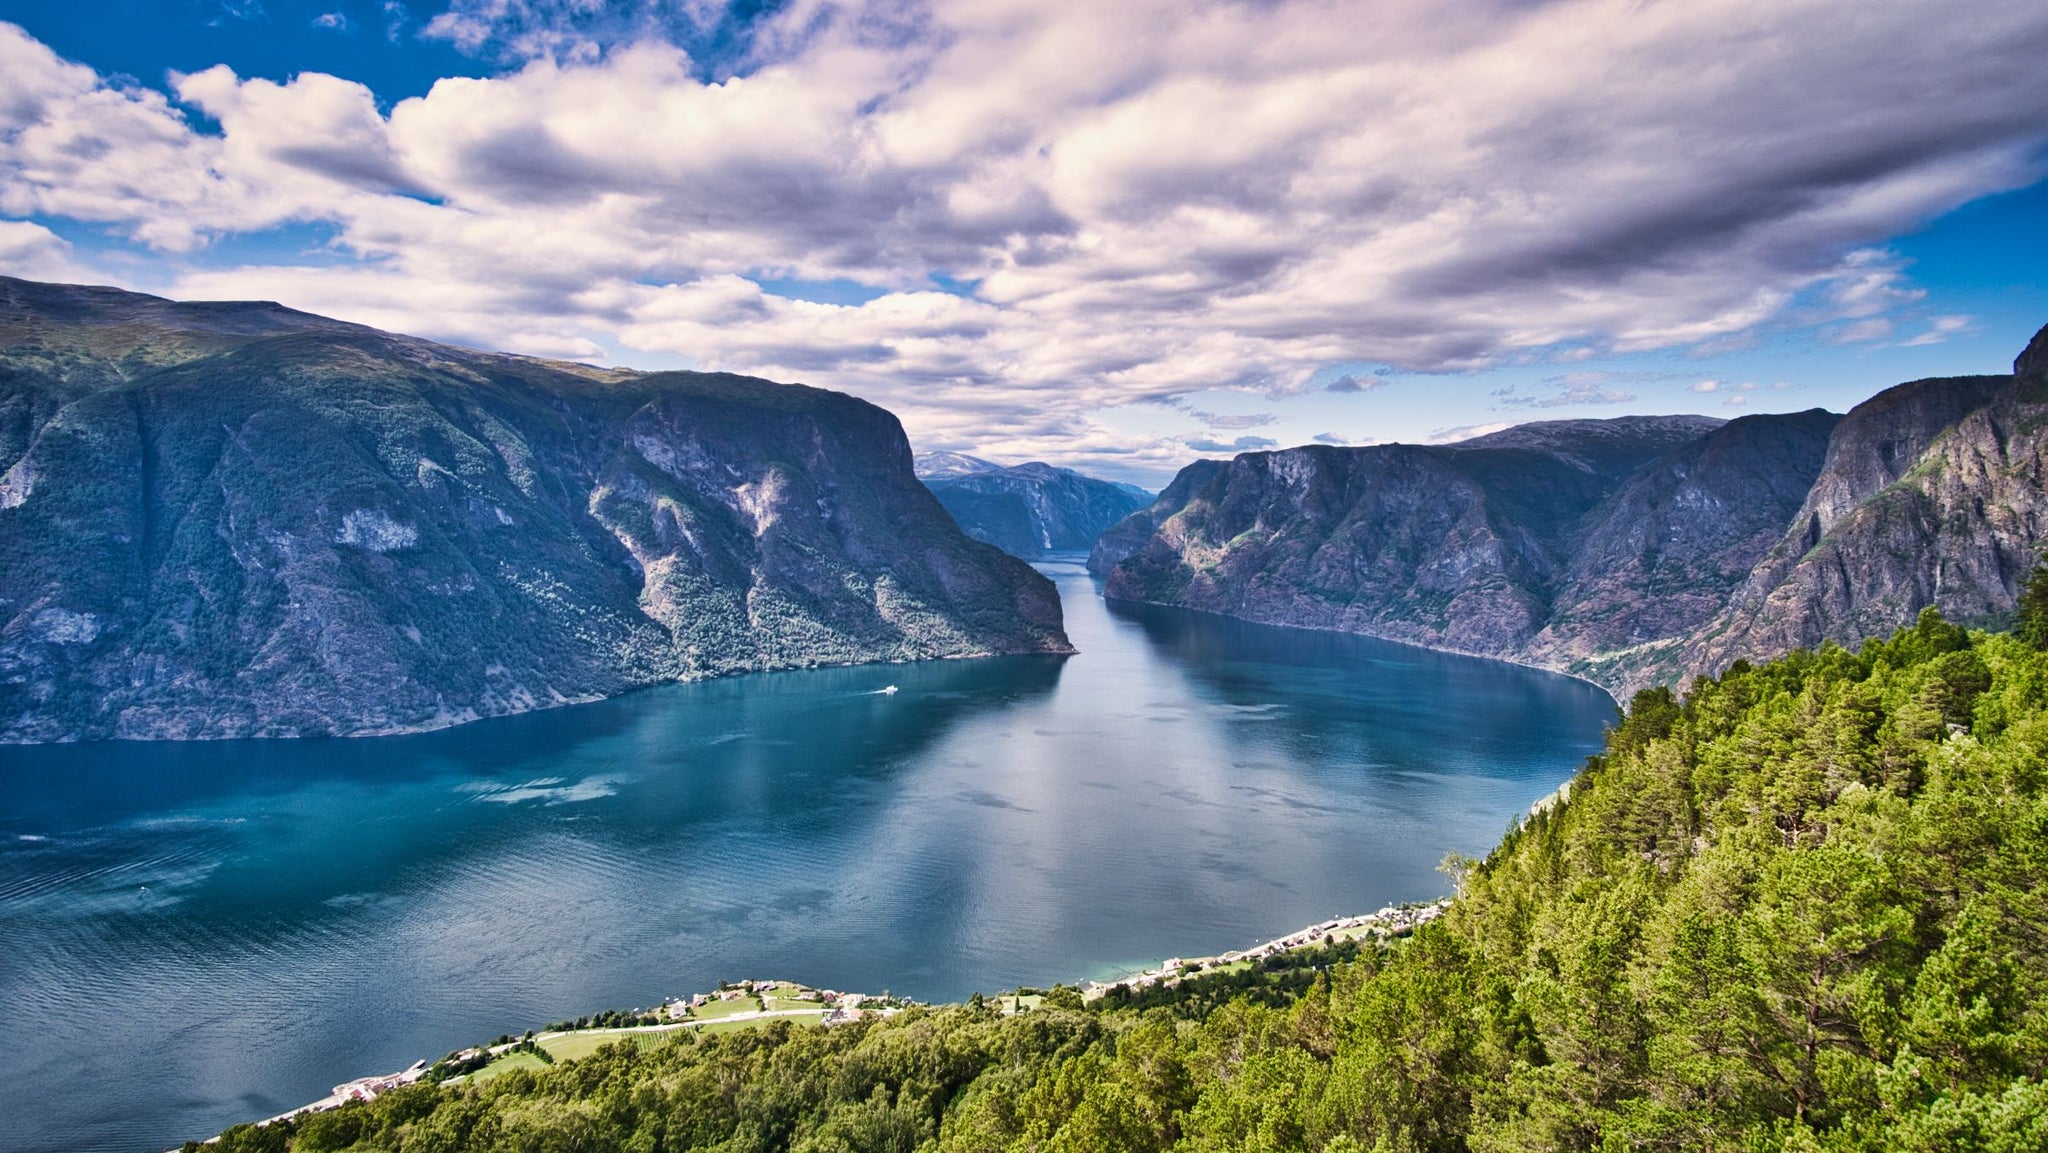 kig ud over aurdalsfjorden og de stejle fjelde